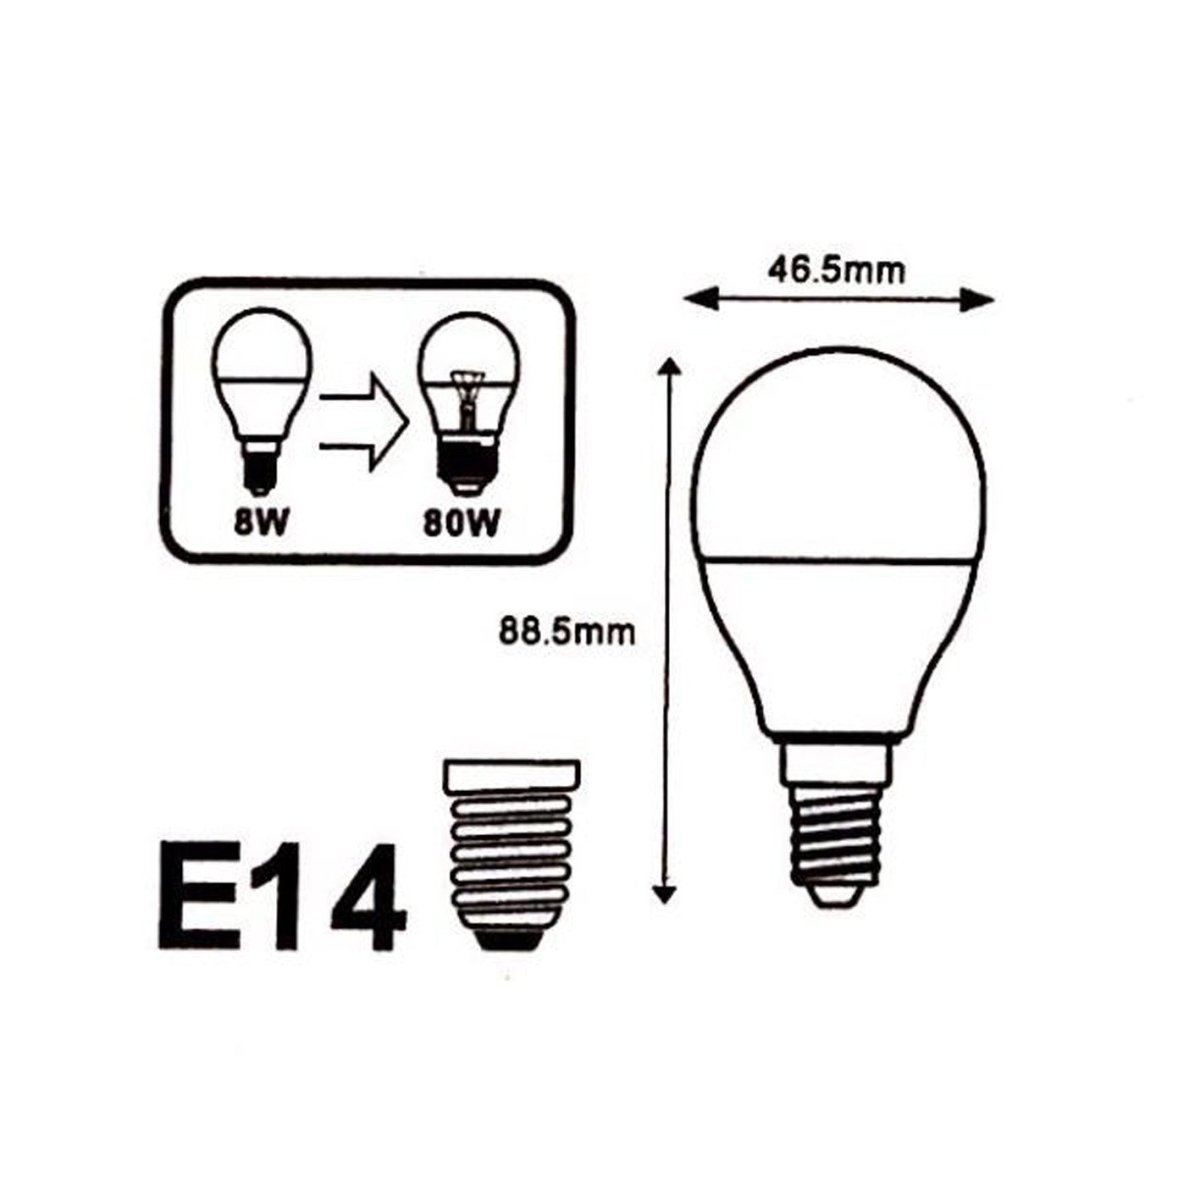 Lampe LED à piles avec interrupteur et fixation adhésive - Noir